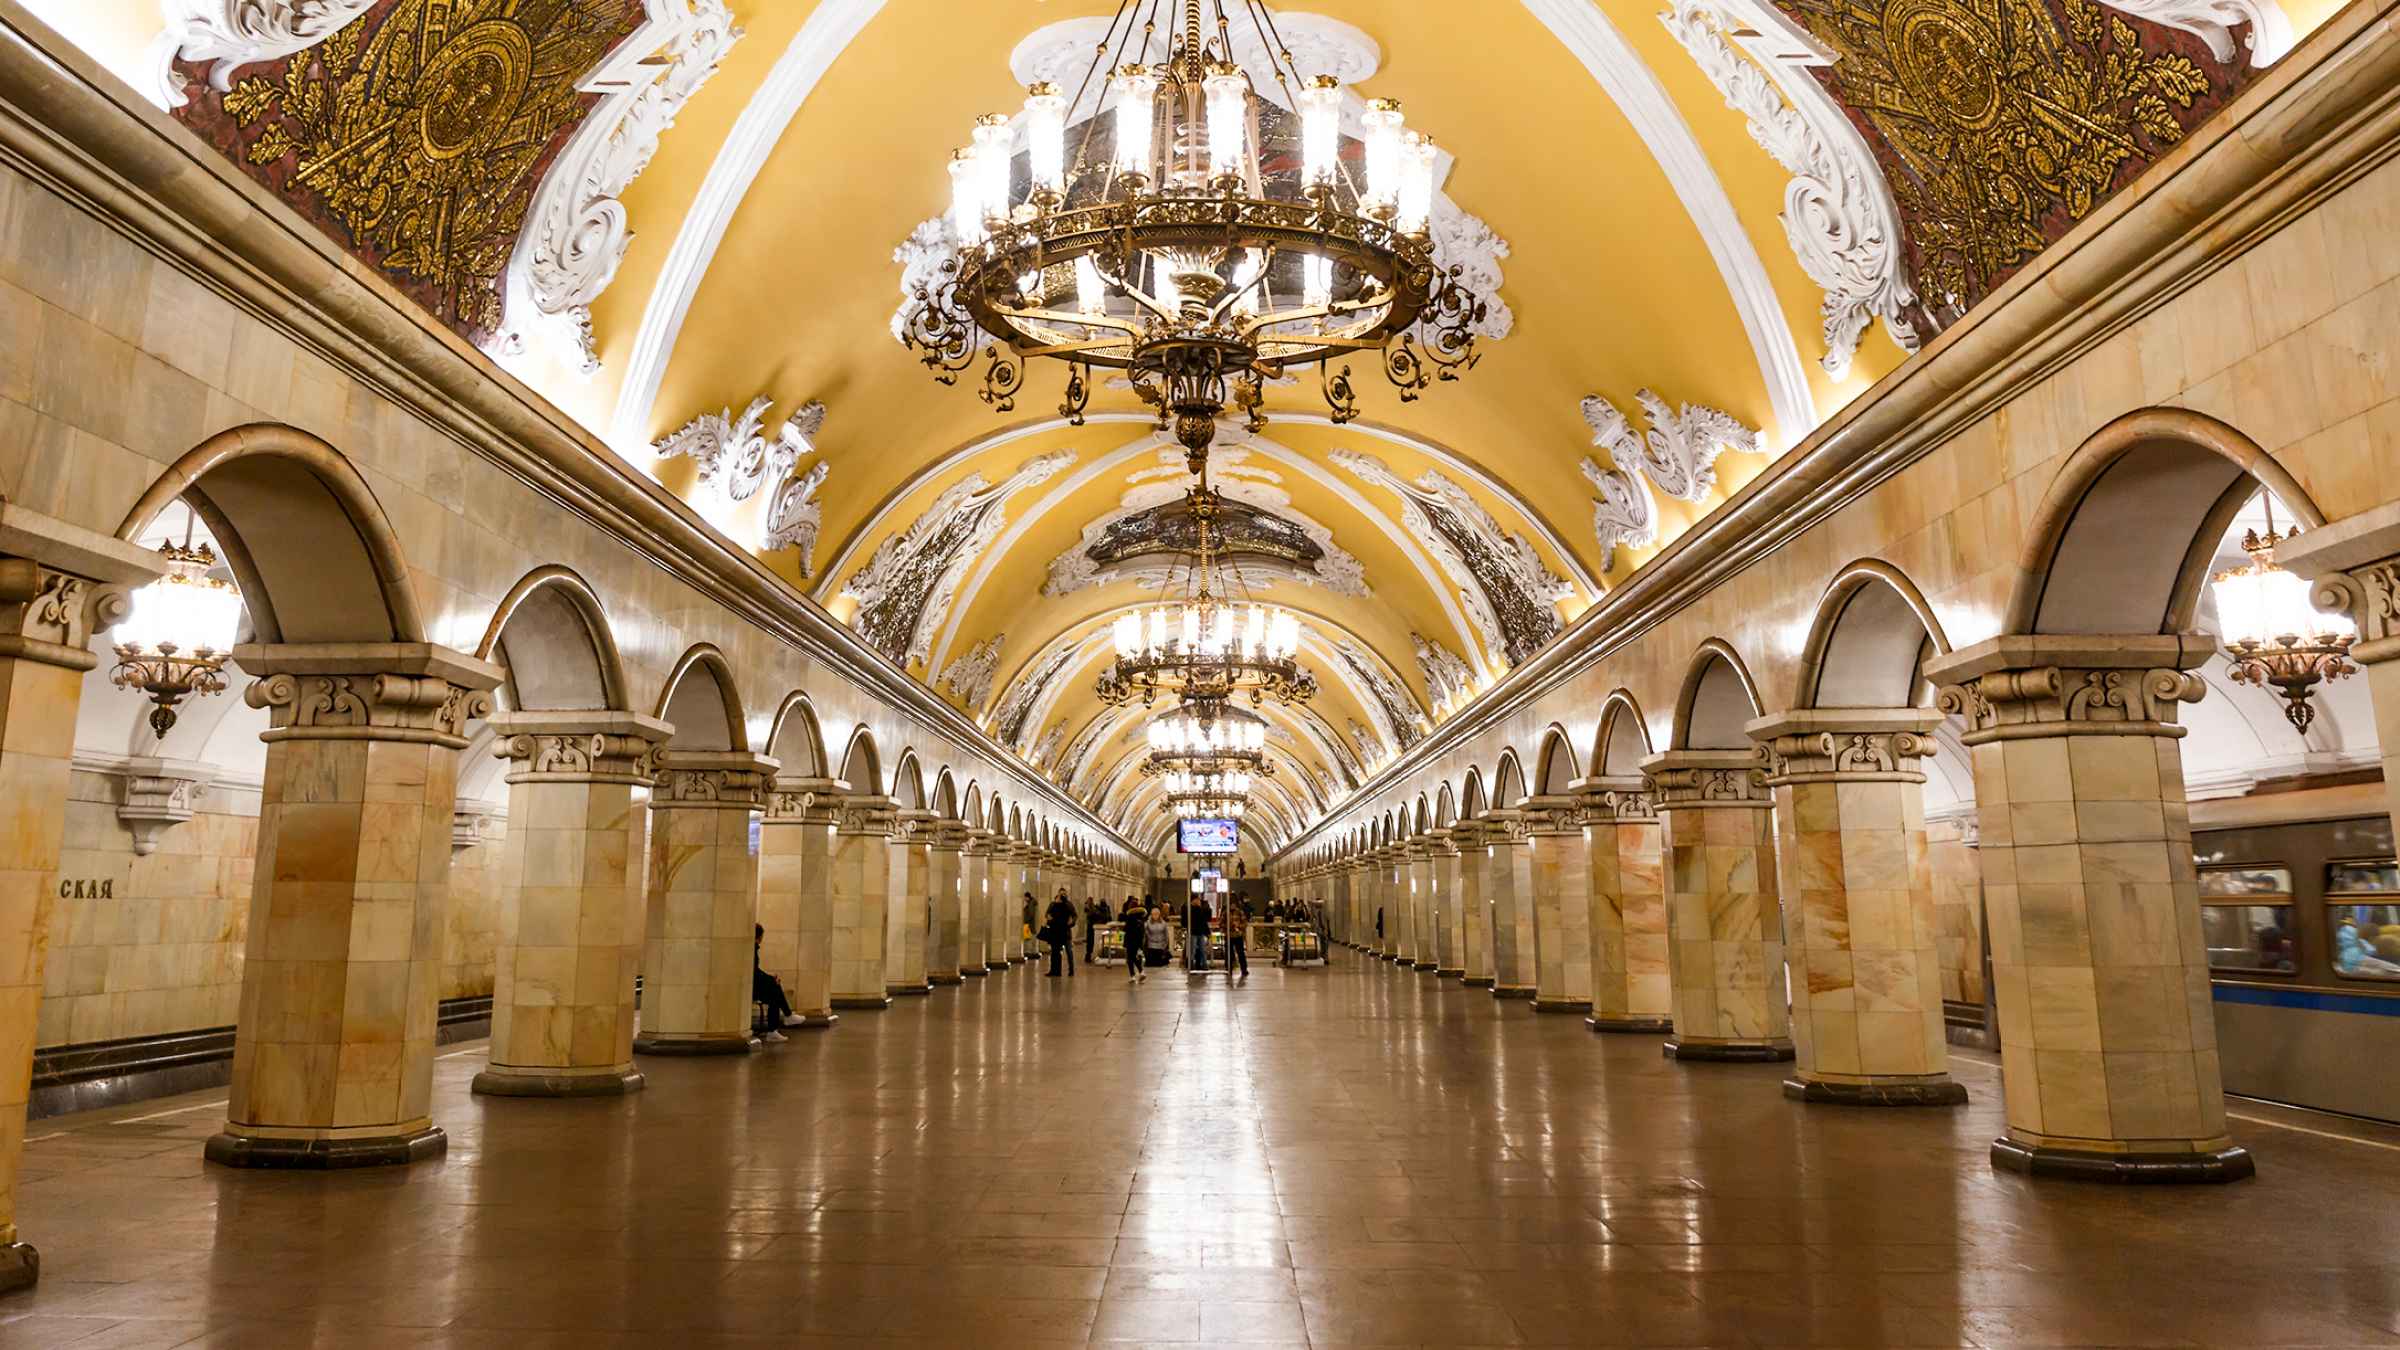 станции метро в москве фото с названиями